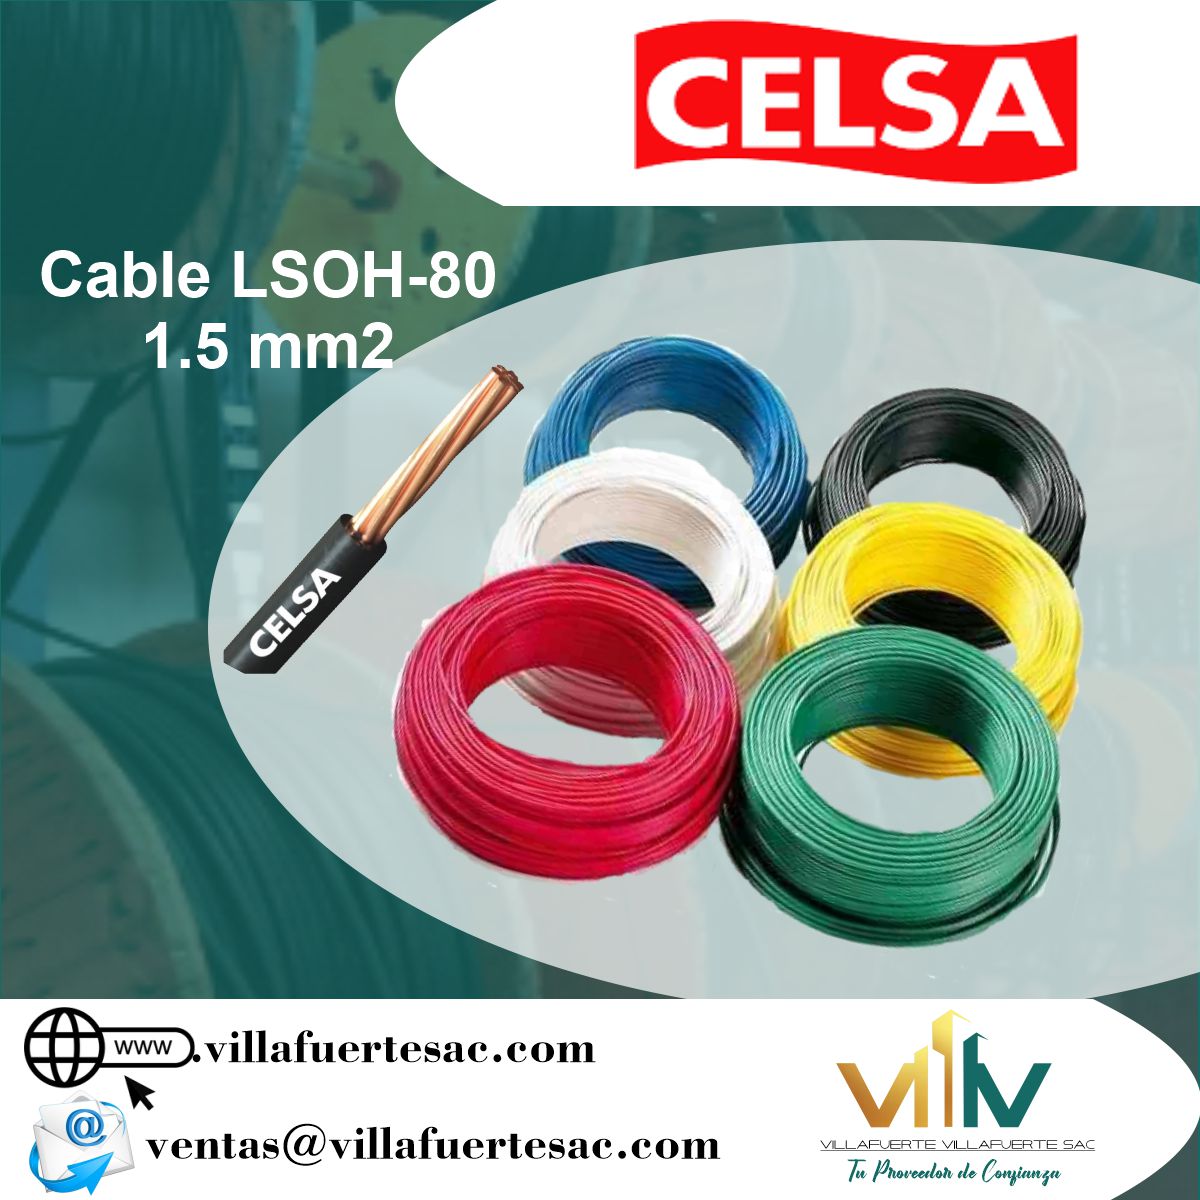 Cable LSOH Celsa 1.5mm - Villafuerte Villafuerte S.A.C